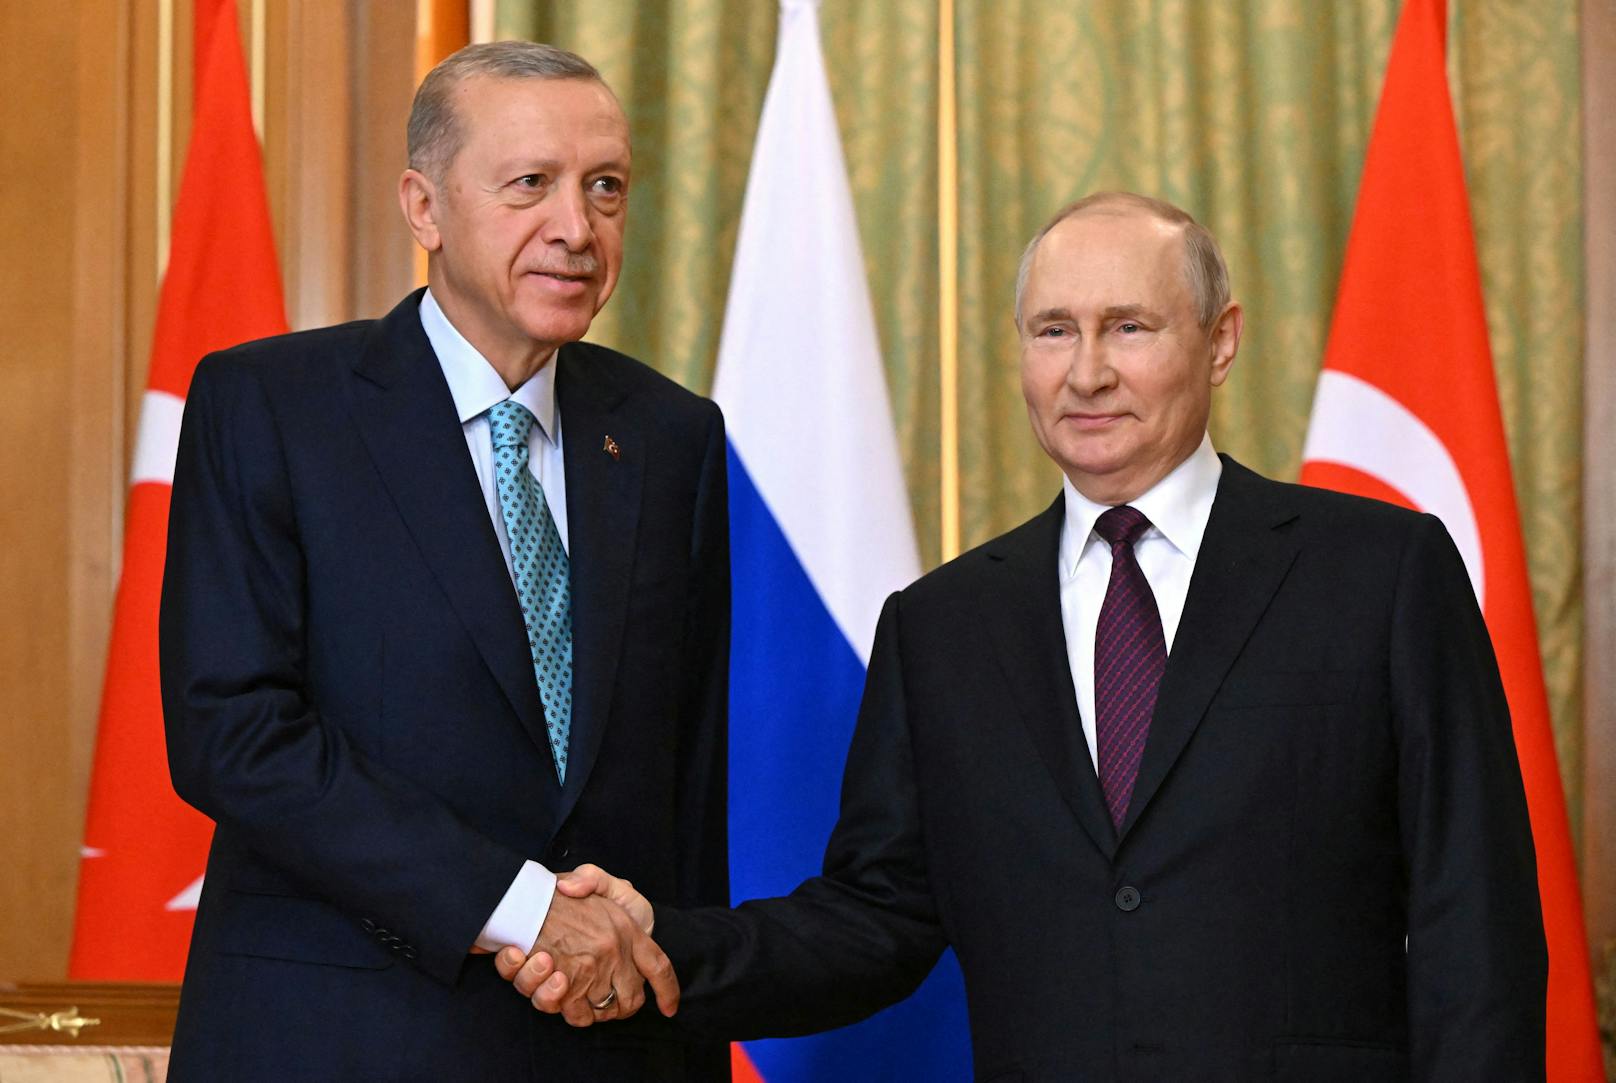 Die Verhandlungen zwischen Russlands Präsident Wladimir Putin und seinem türkischen Amtskollegen Recep Tayyip Erdogan über das Getreideabkommen sind beendet.